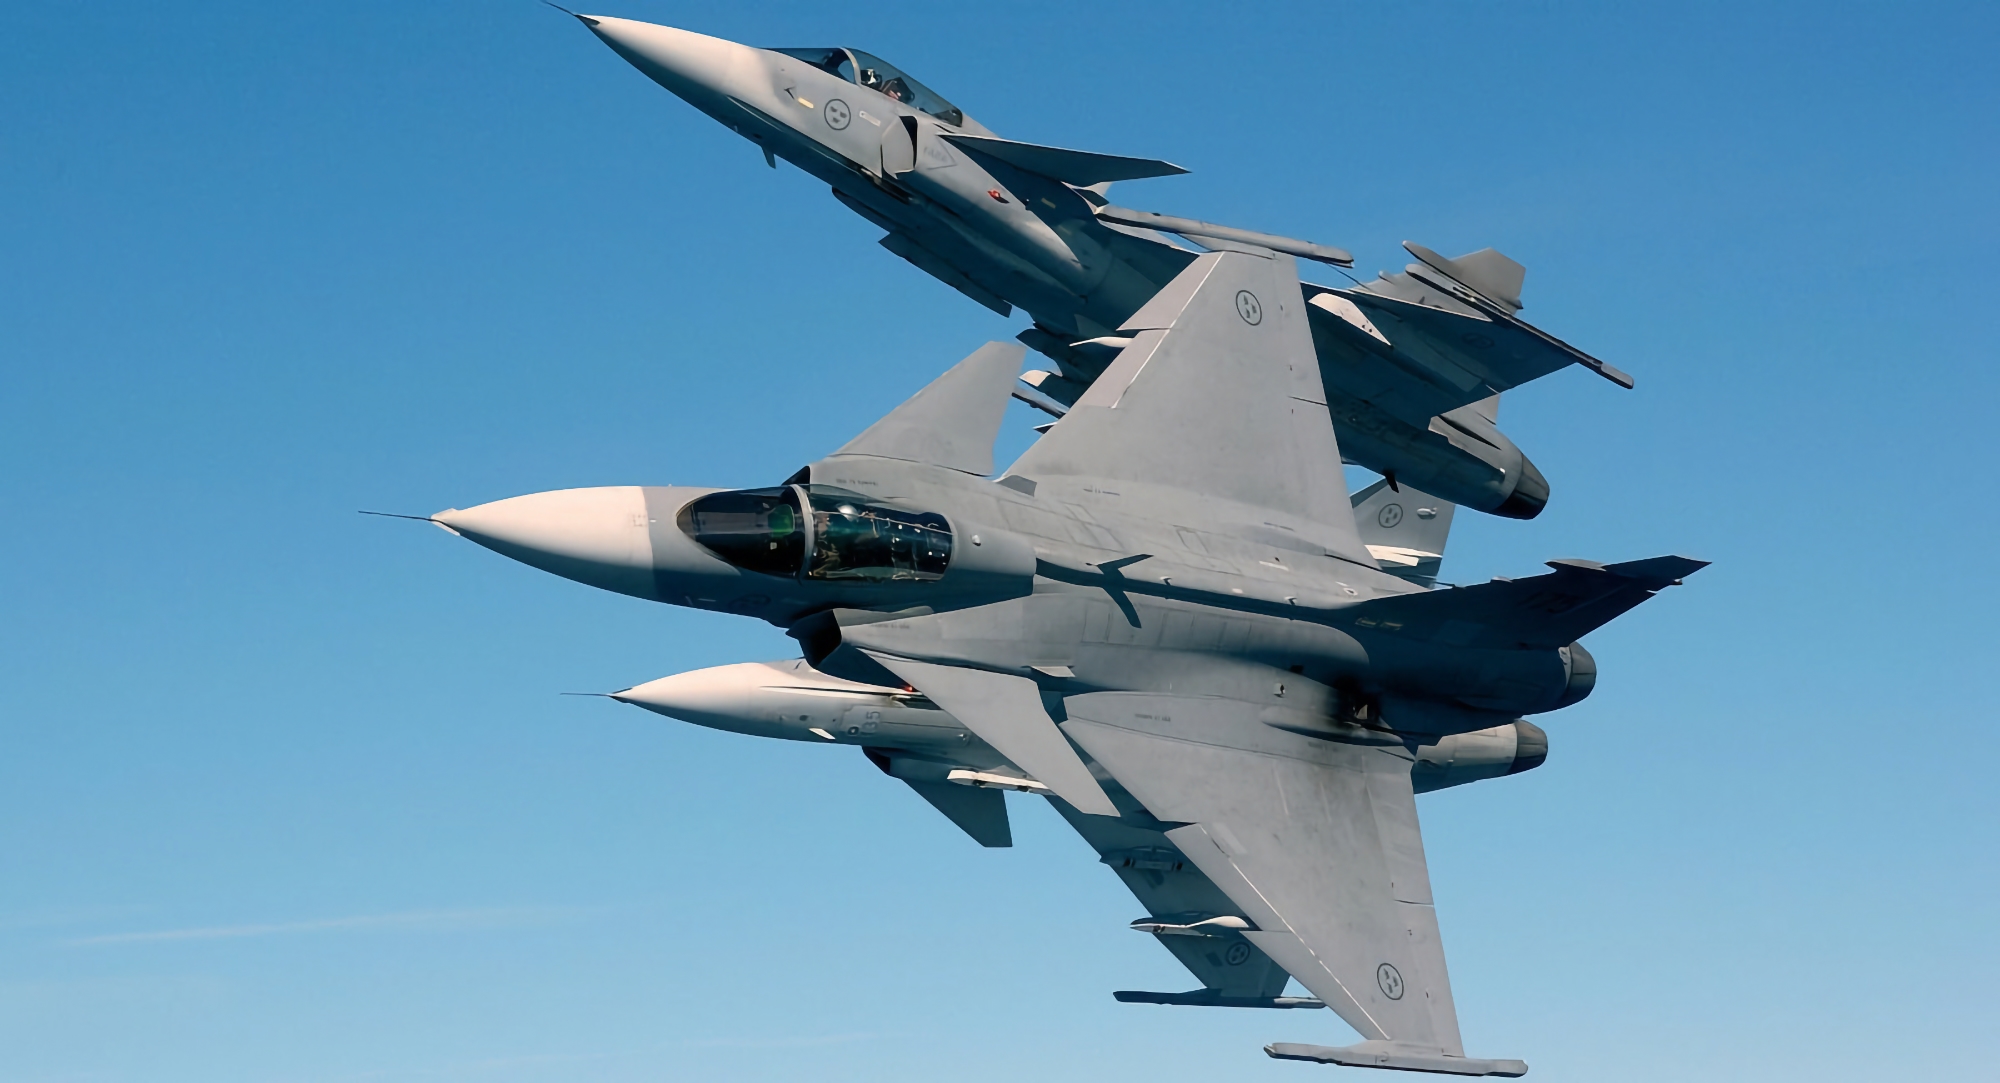 Czechy mogą rozpocząć szkolenie ukraińskich pilotów na szwedzkich myśliwcach Saab JAS 39 Gripen